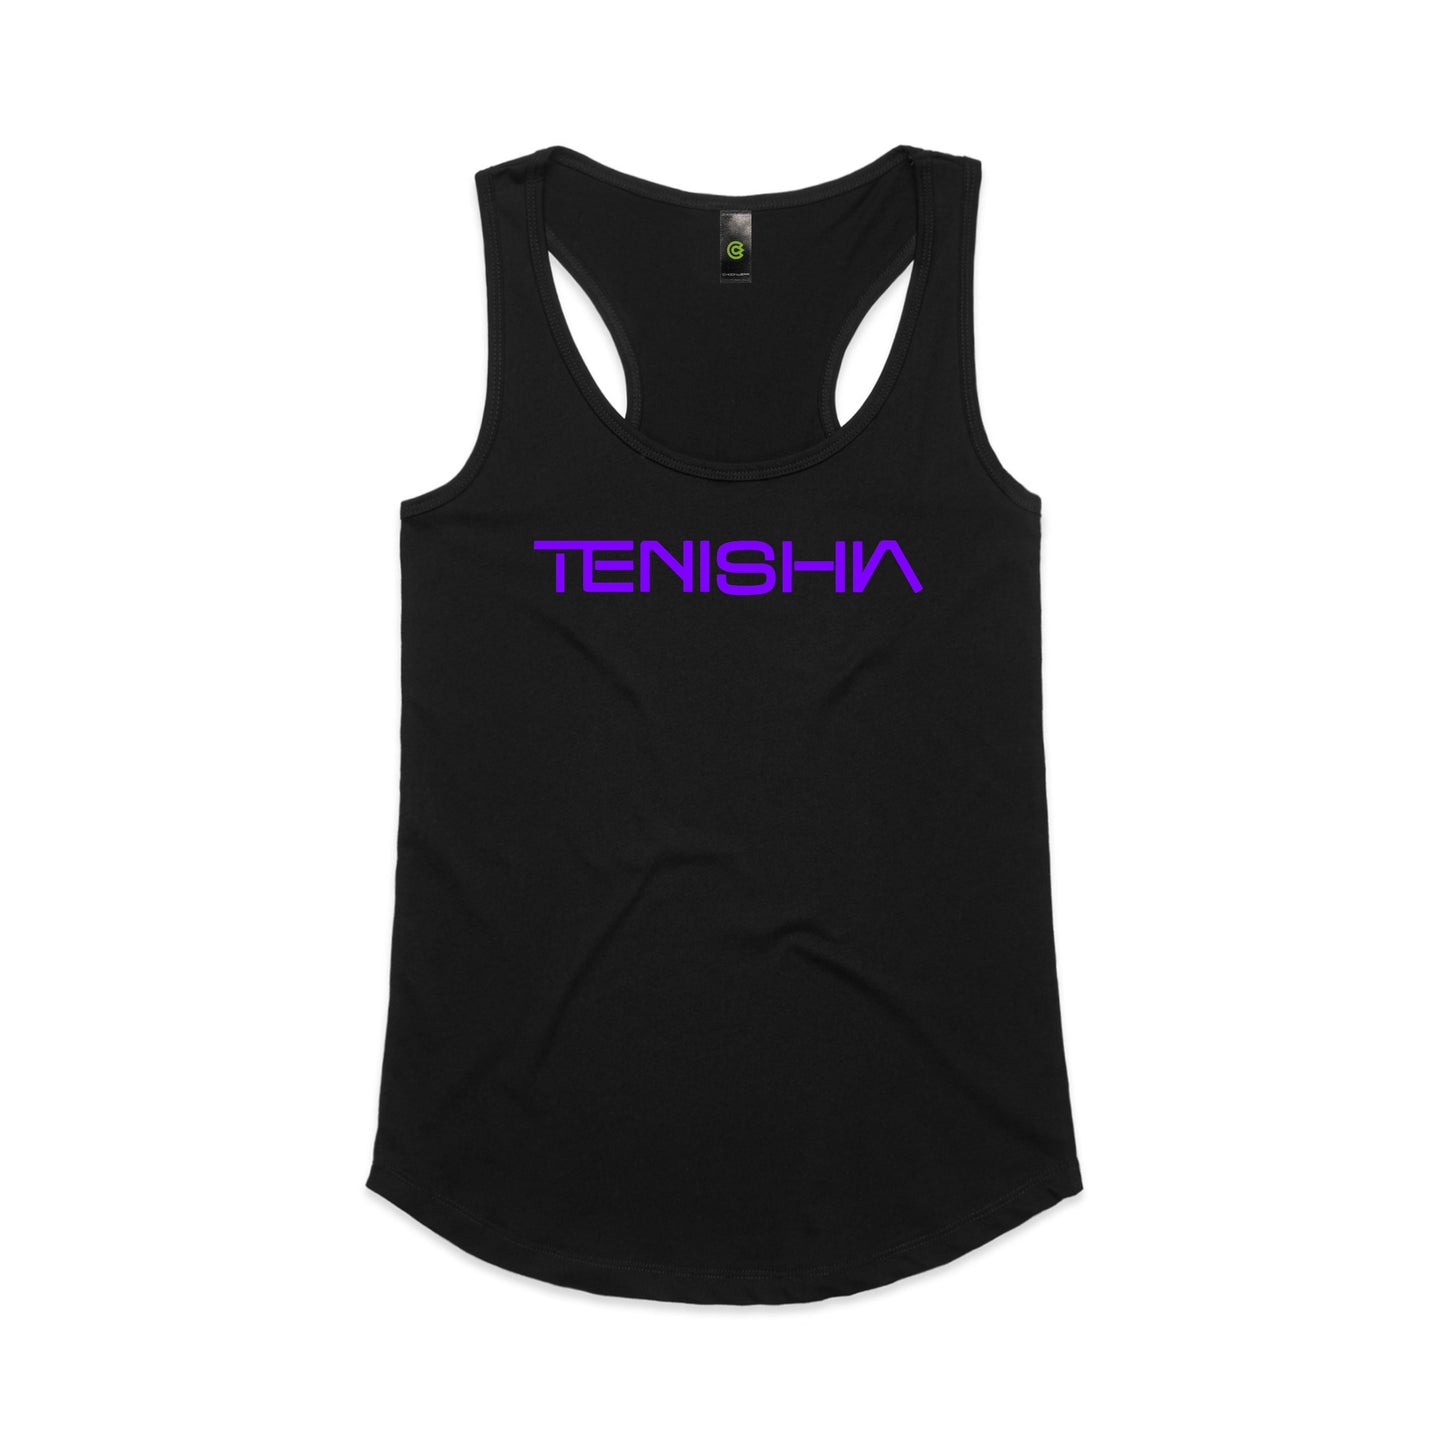 TENISHIA Women's Racerback